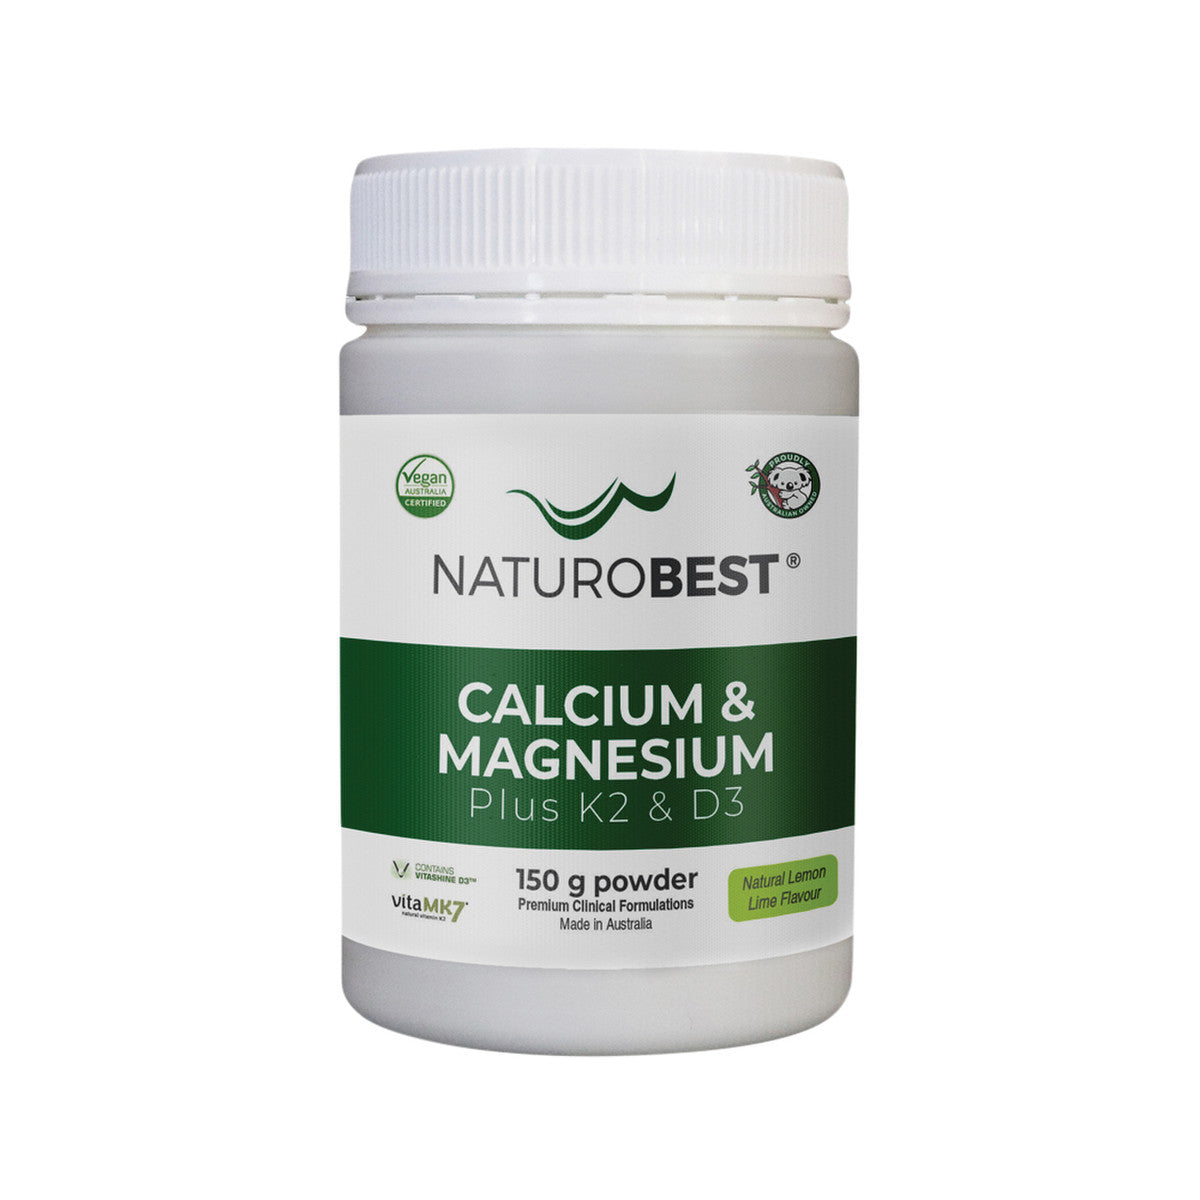 NaturoBest - Calcium and Magnesium Plus K2 and D3